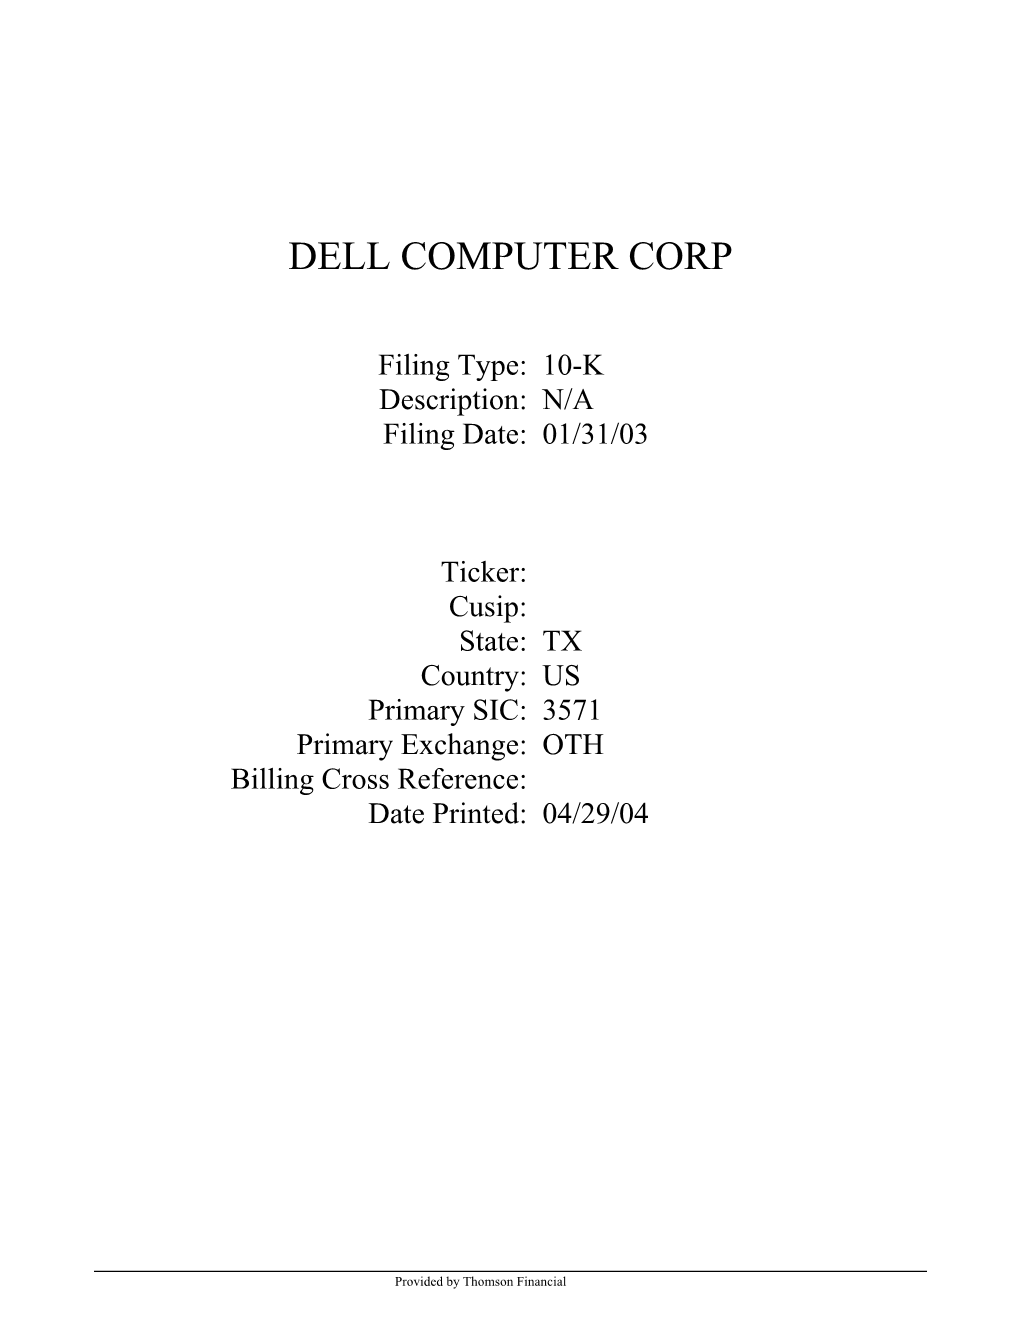 Dell Computer Corp